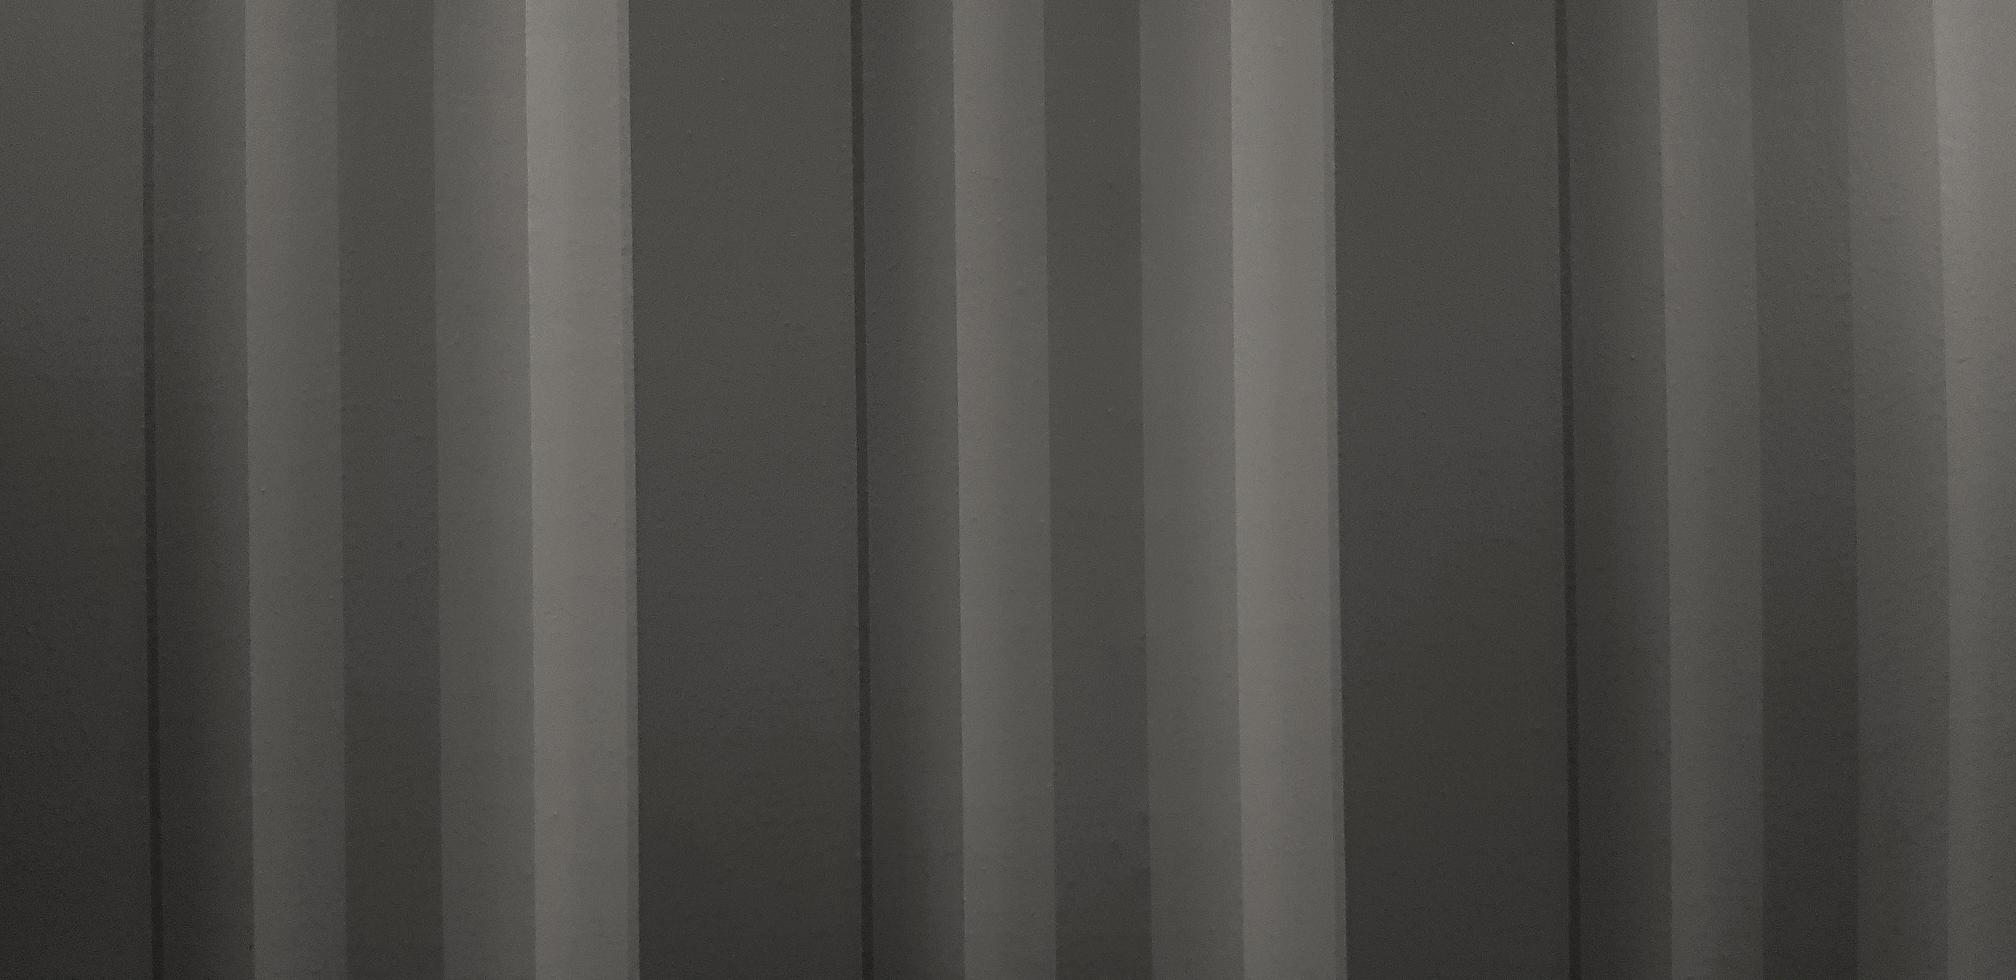 motif de ligne de fond gris foncé. papier peint ou mur gris. photo